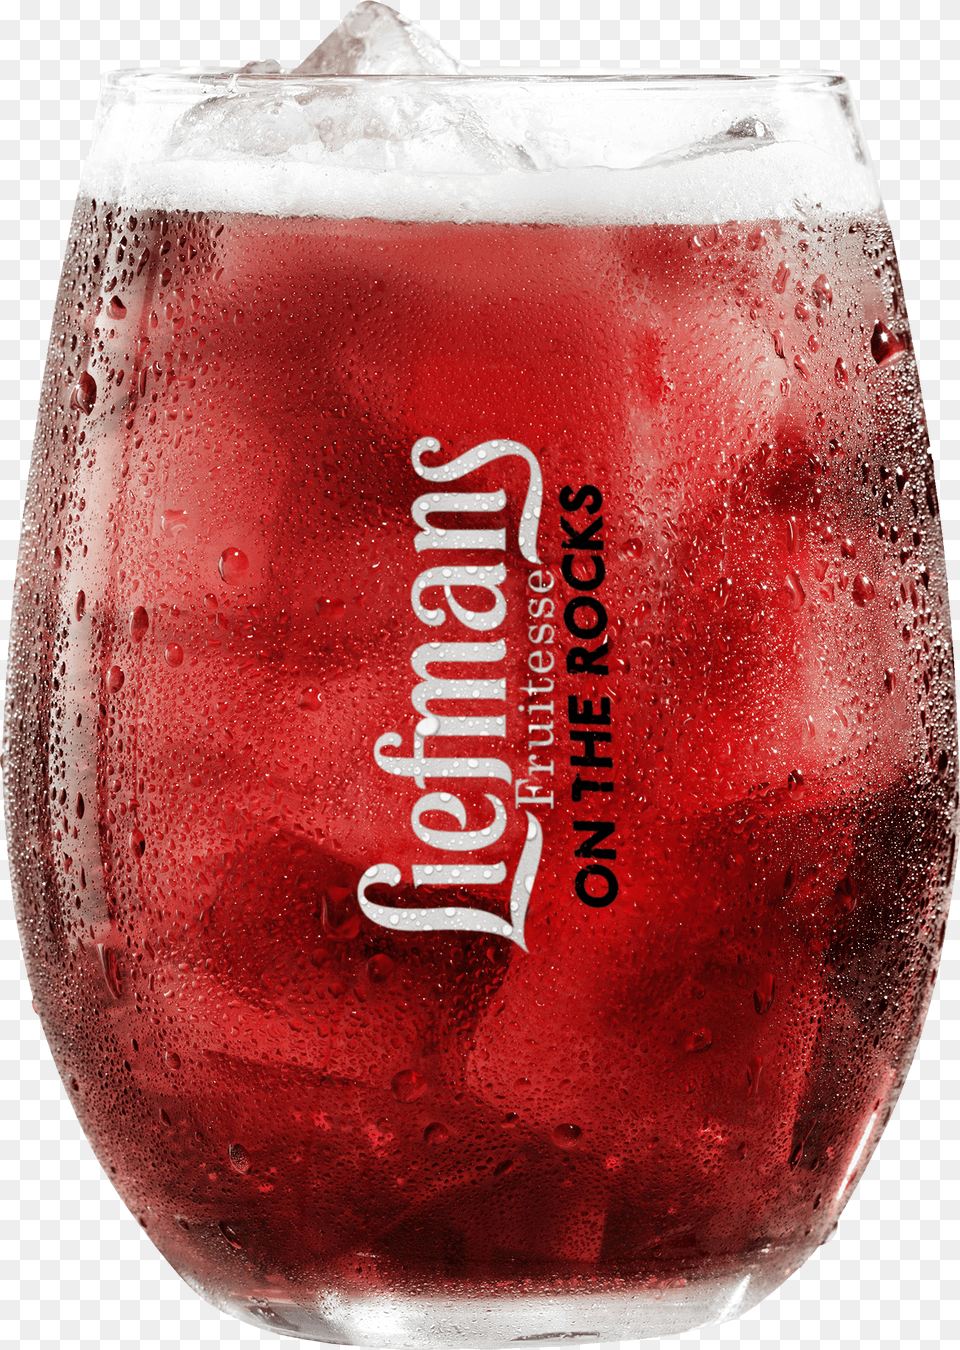 Download Liefmans, Alcohol, Beer, Beverage, Glass Free Transparent Png